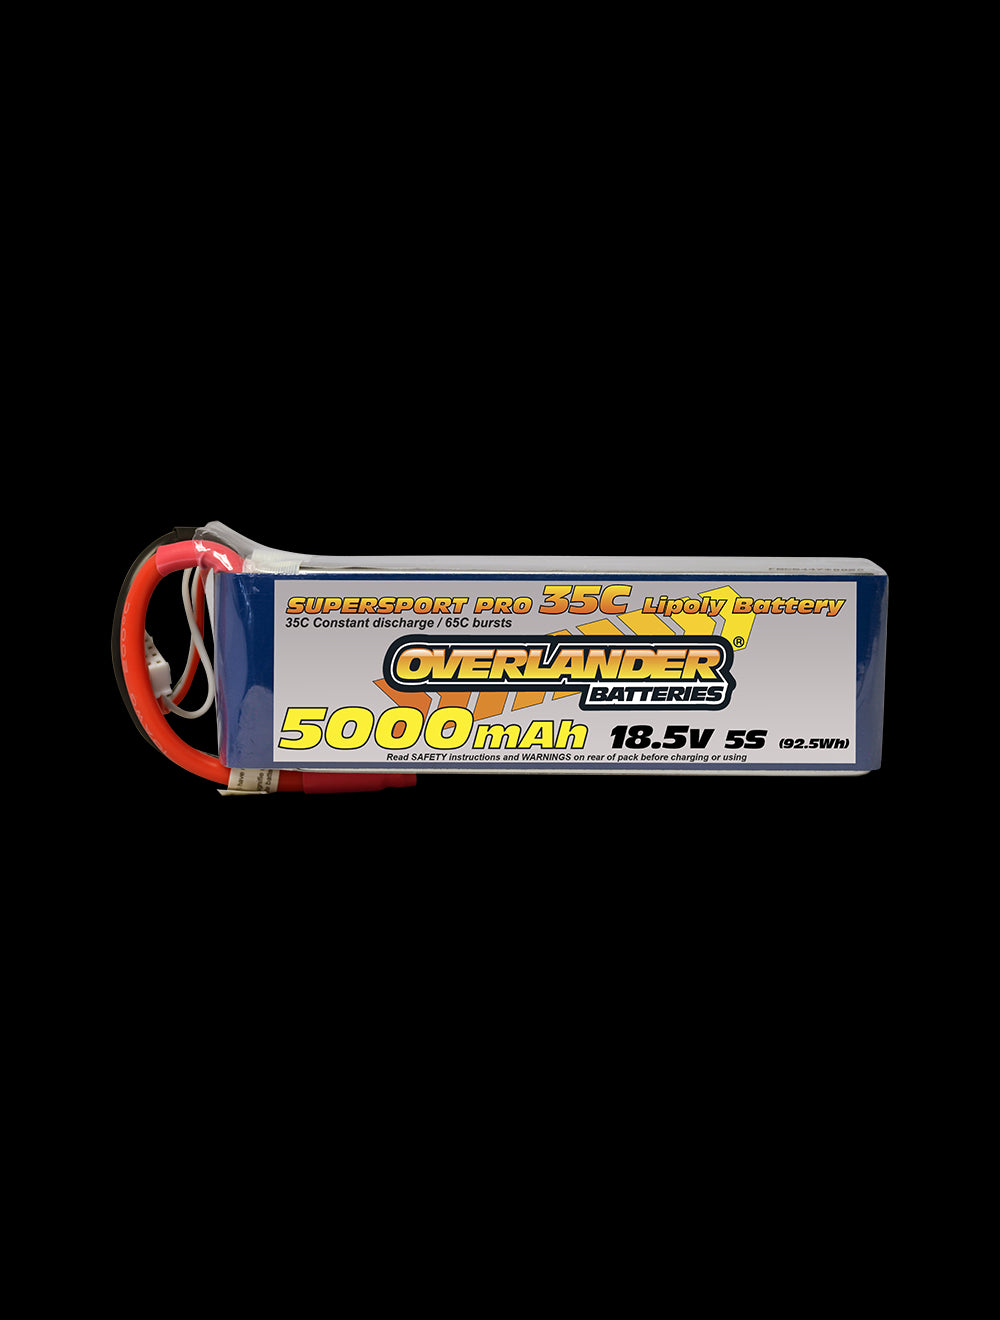 Overlander 5000mAh 18.5V 5S 35C Supersport Pro LiPo Battery - XT90 Connector 2579